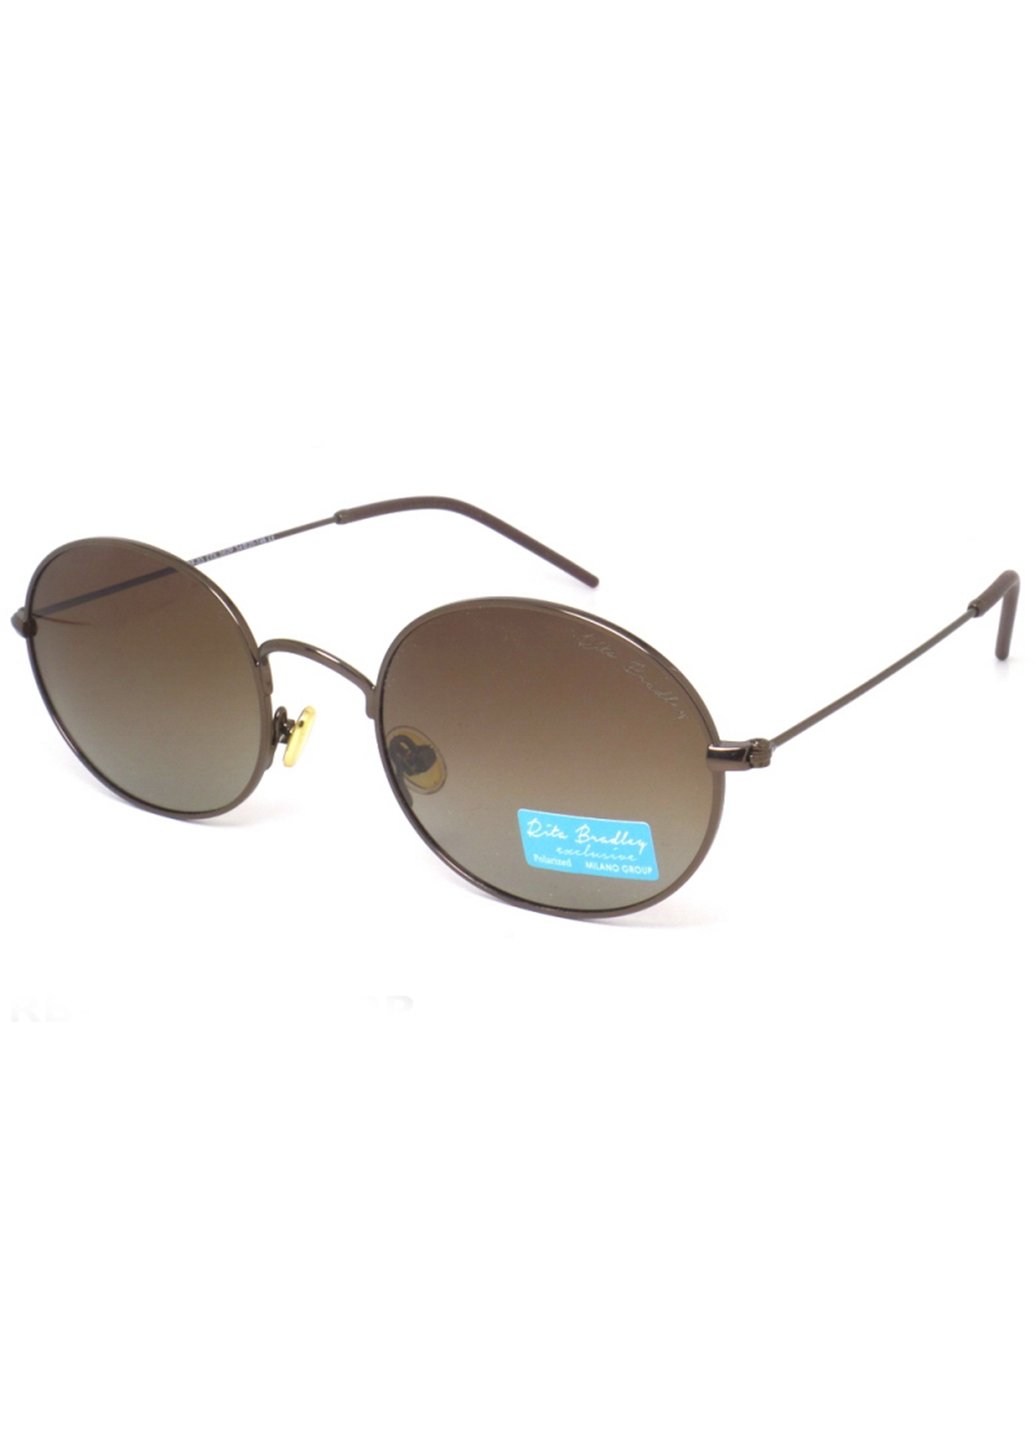 Купить Женские солнцезащитные очки Rita Bradley с поляризацией RB-03 112010 в интернет-магазине